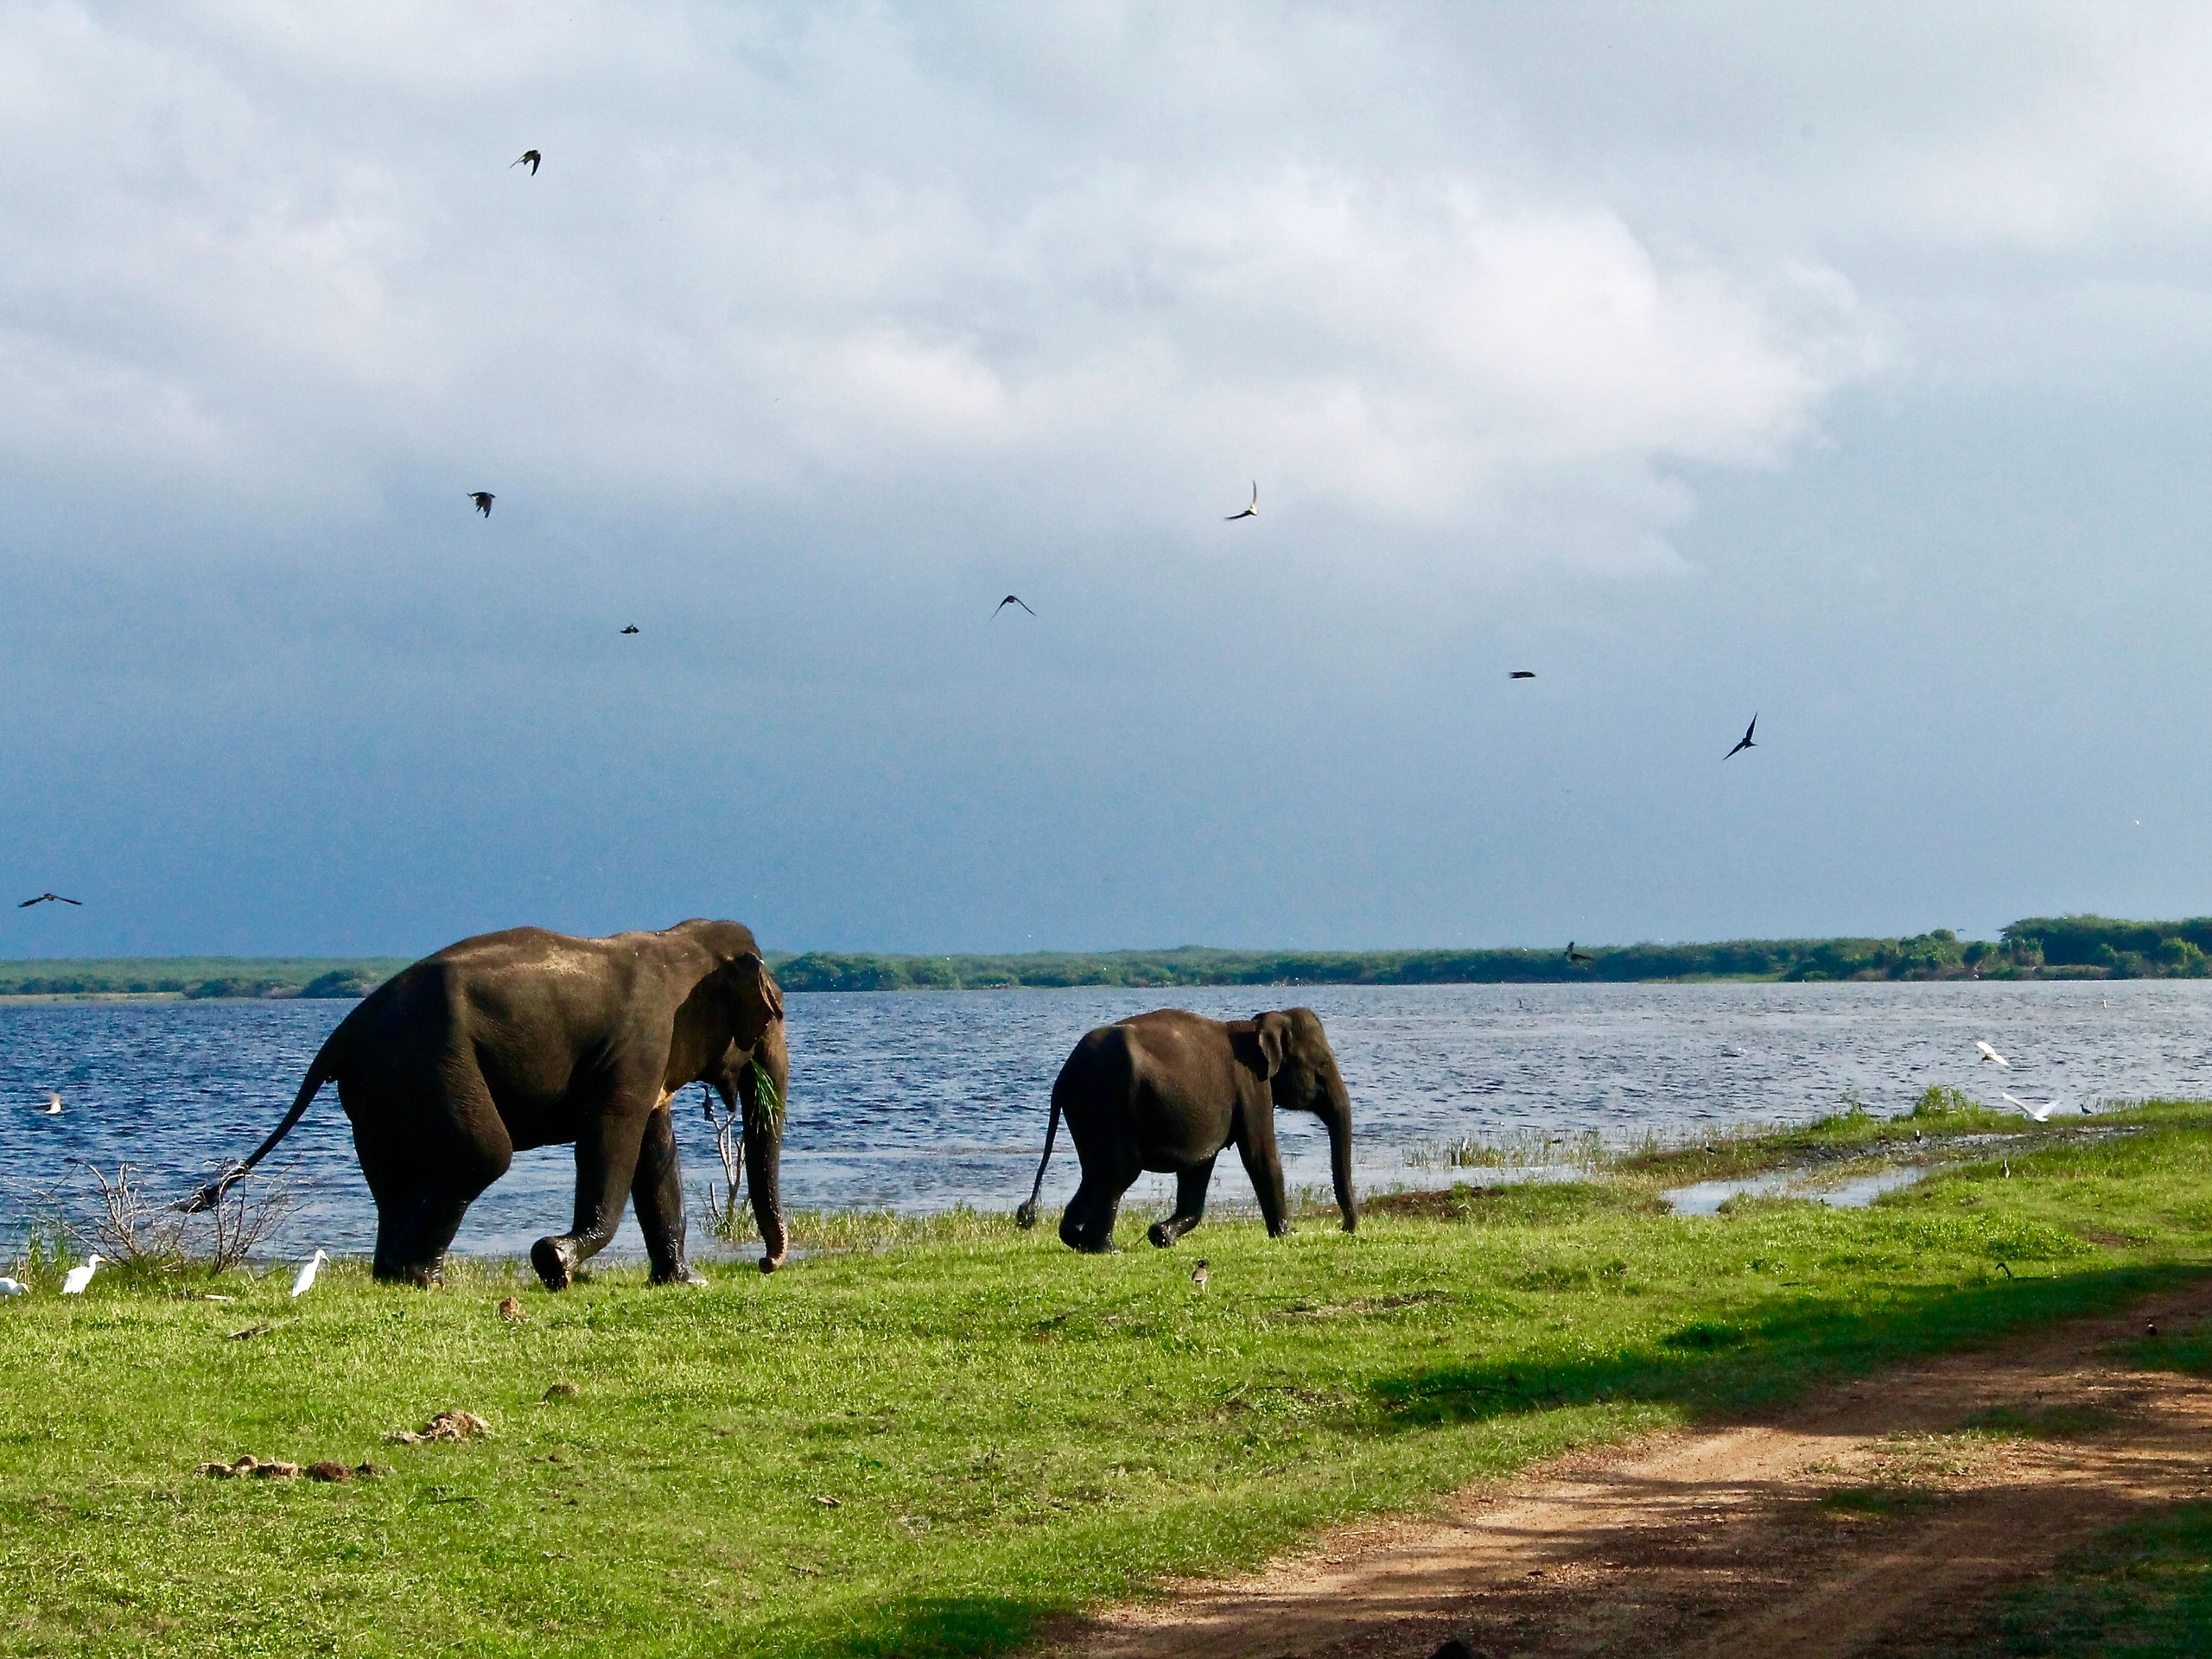 Two elephants roaming along the lake in Sri Lanka